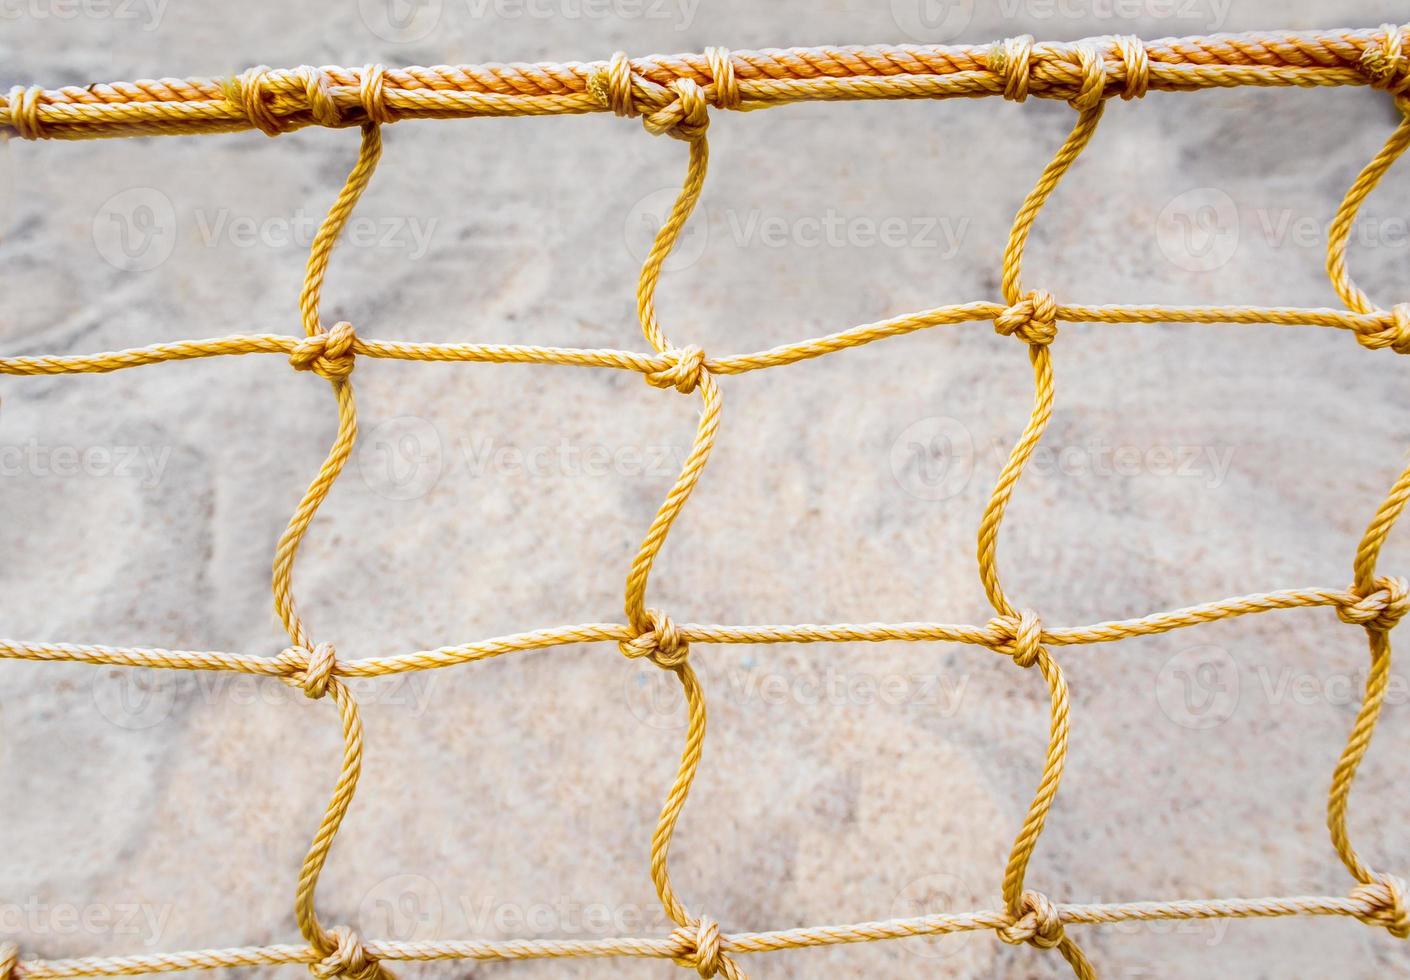 rede de malha de vôlei de praia foto